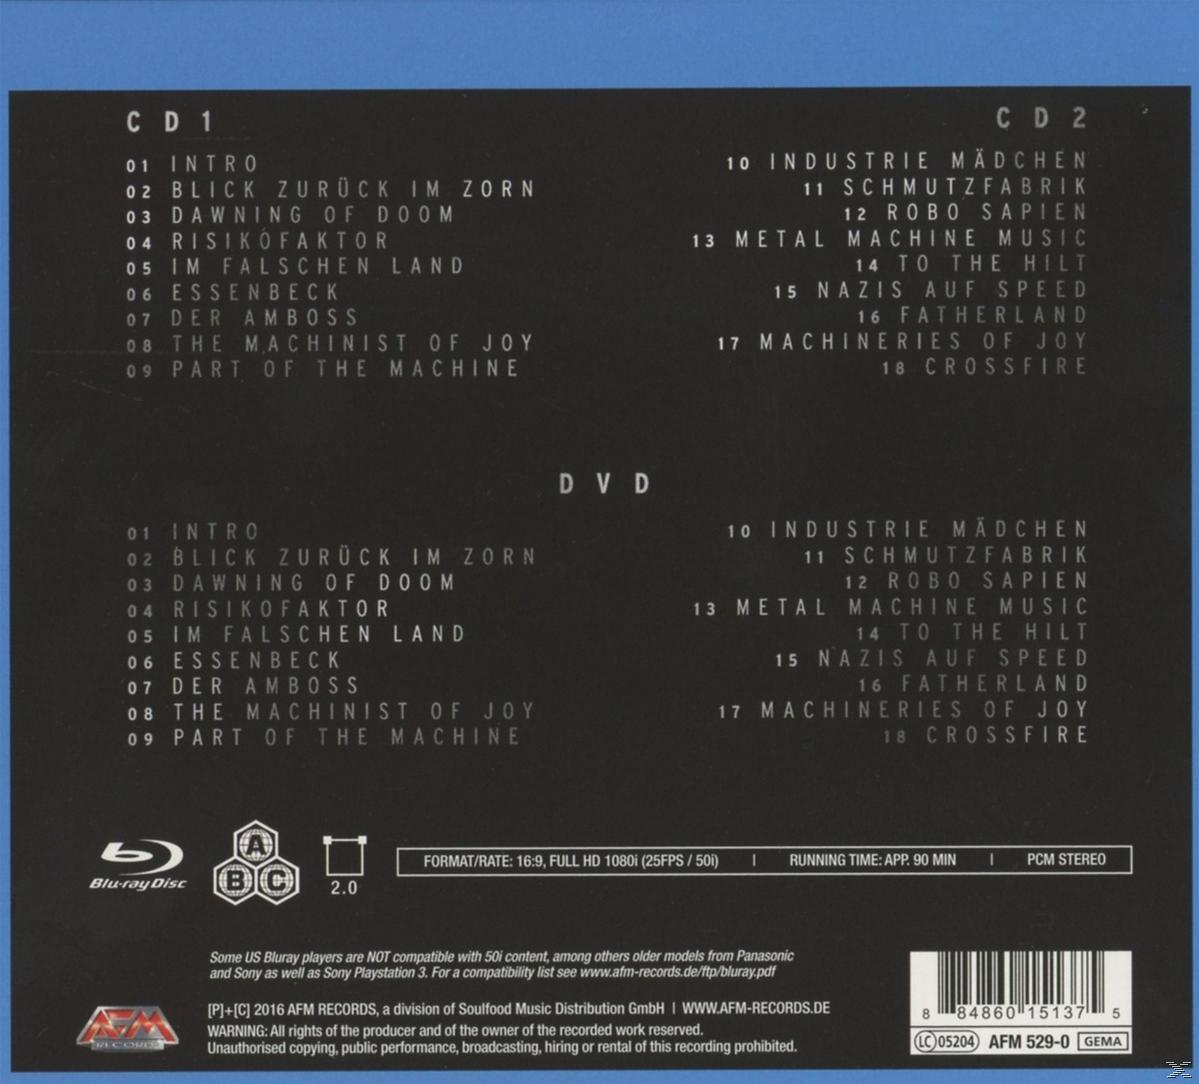 Ringe Live (CD Im (Blu-Ray/2cd) Blu-ray Der Krupps - Disc) Die Schatten - +